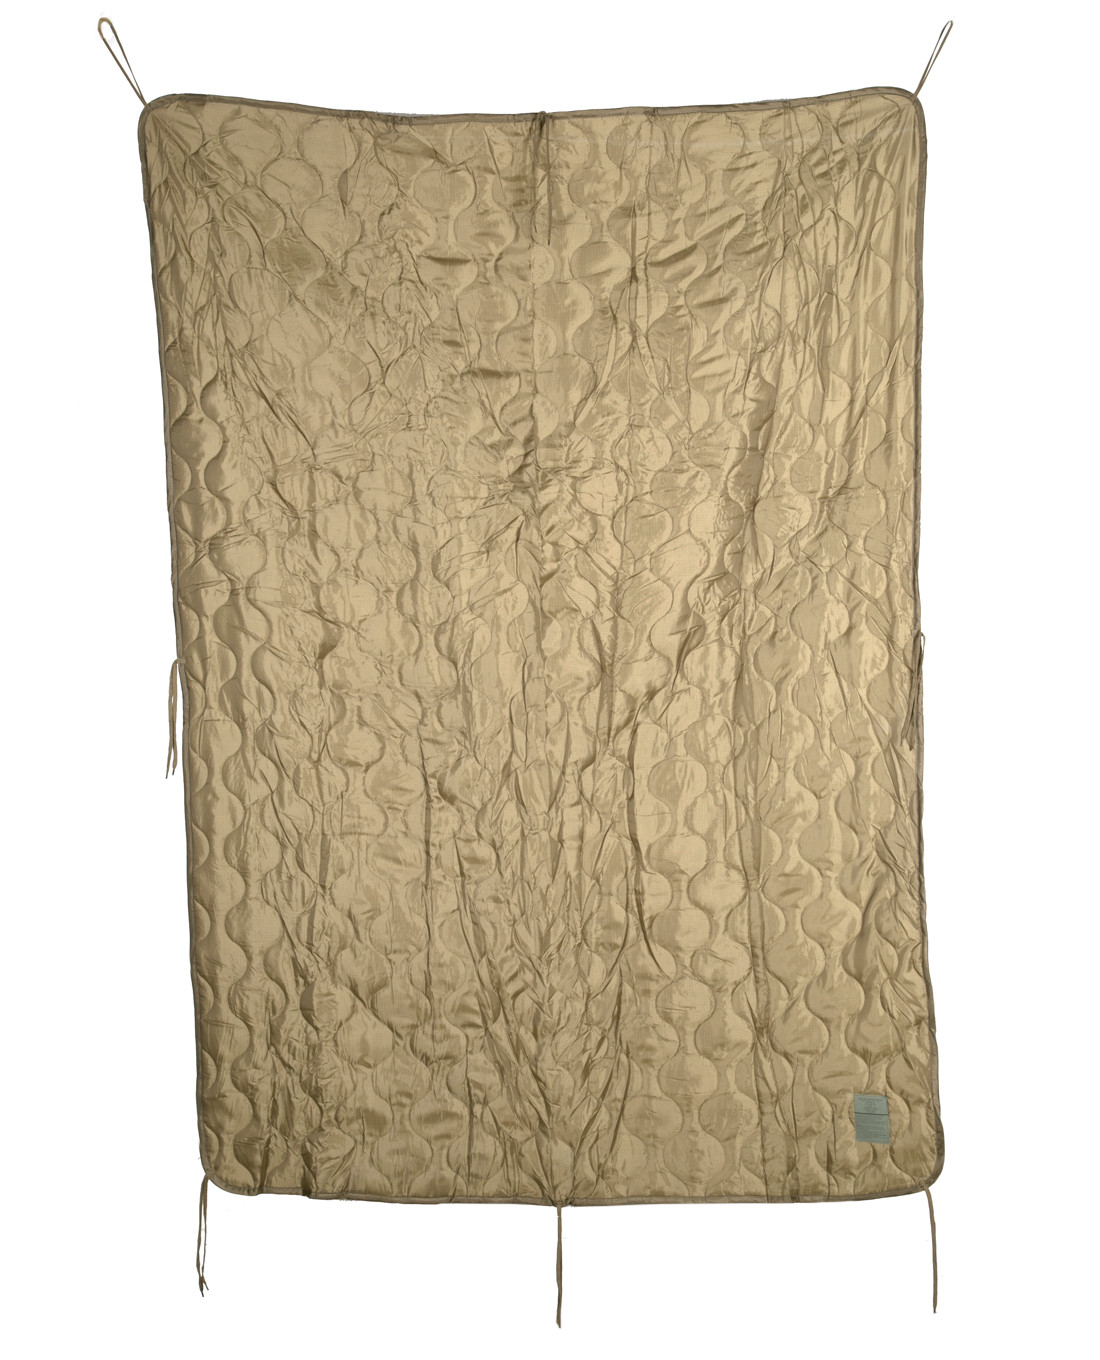 Mil-Tec US Army PONCHO LINER Travel Blanket 210 x 150 cm Black